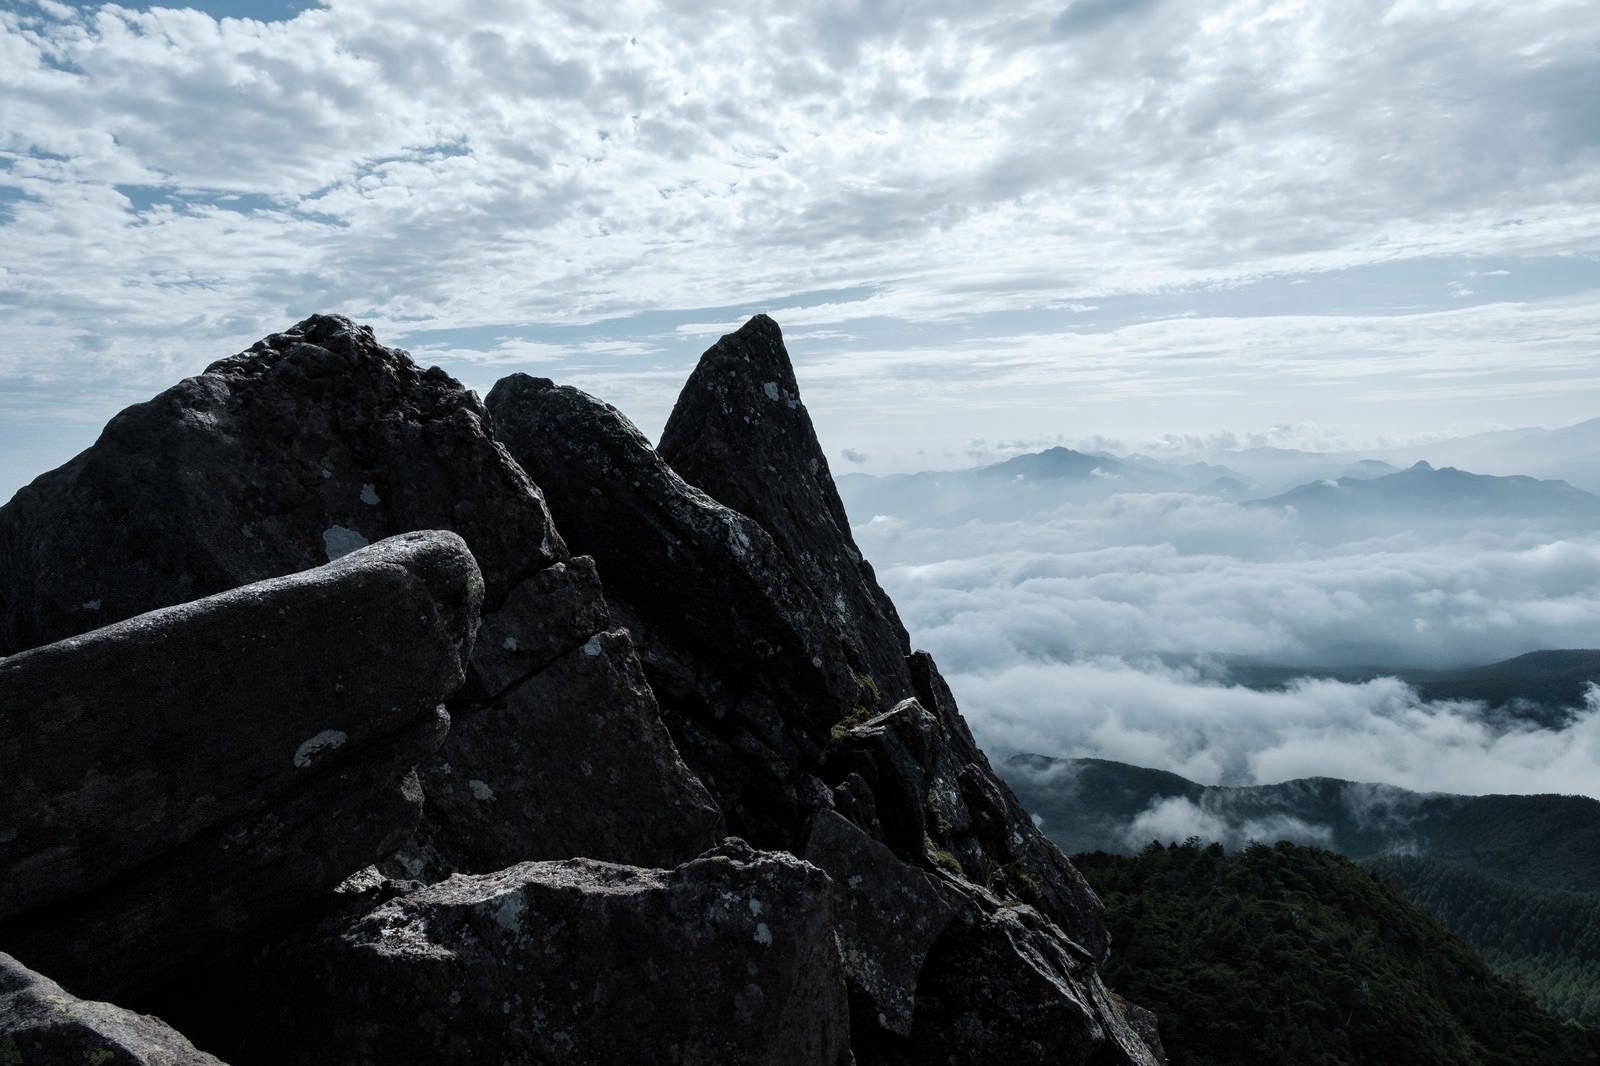 「にゅう山頂部の岩峰と眺望」の写真